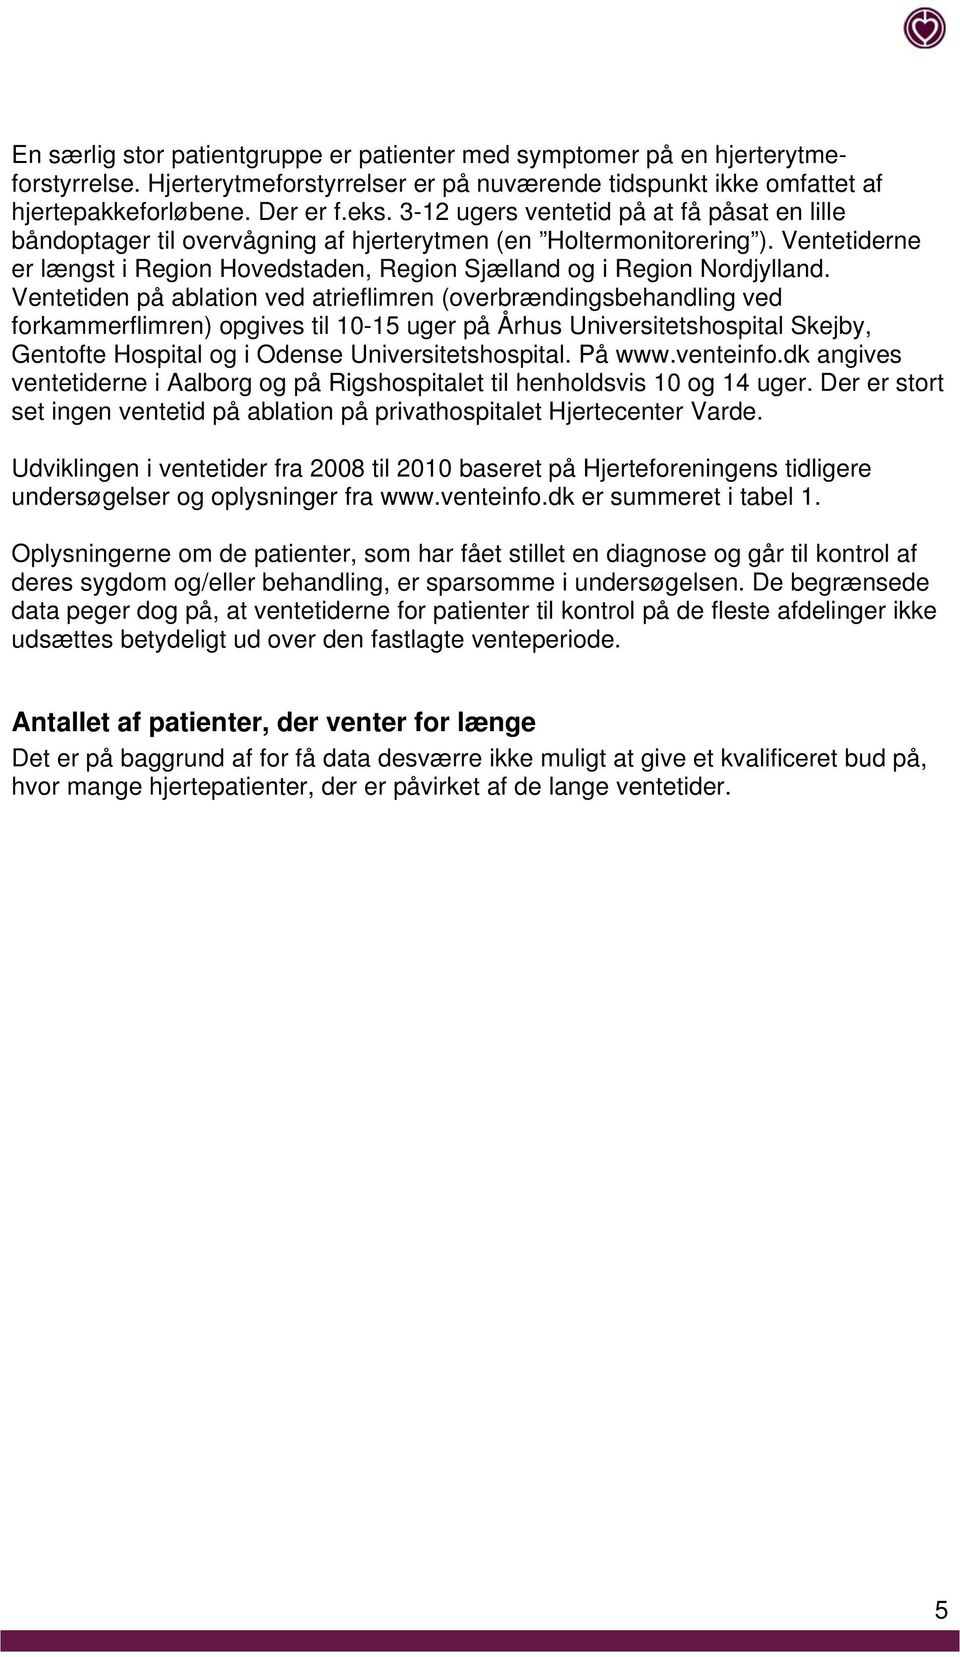 Ventetiden på ablation ved atrieflimren (overbrændingsbehandling ved forkammerflimren) opgives til 10-15 uger på Århus Universitetshospital Skejby, Gentofte Hospital og i Odense Universitetshospital.